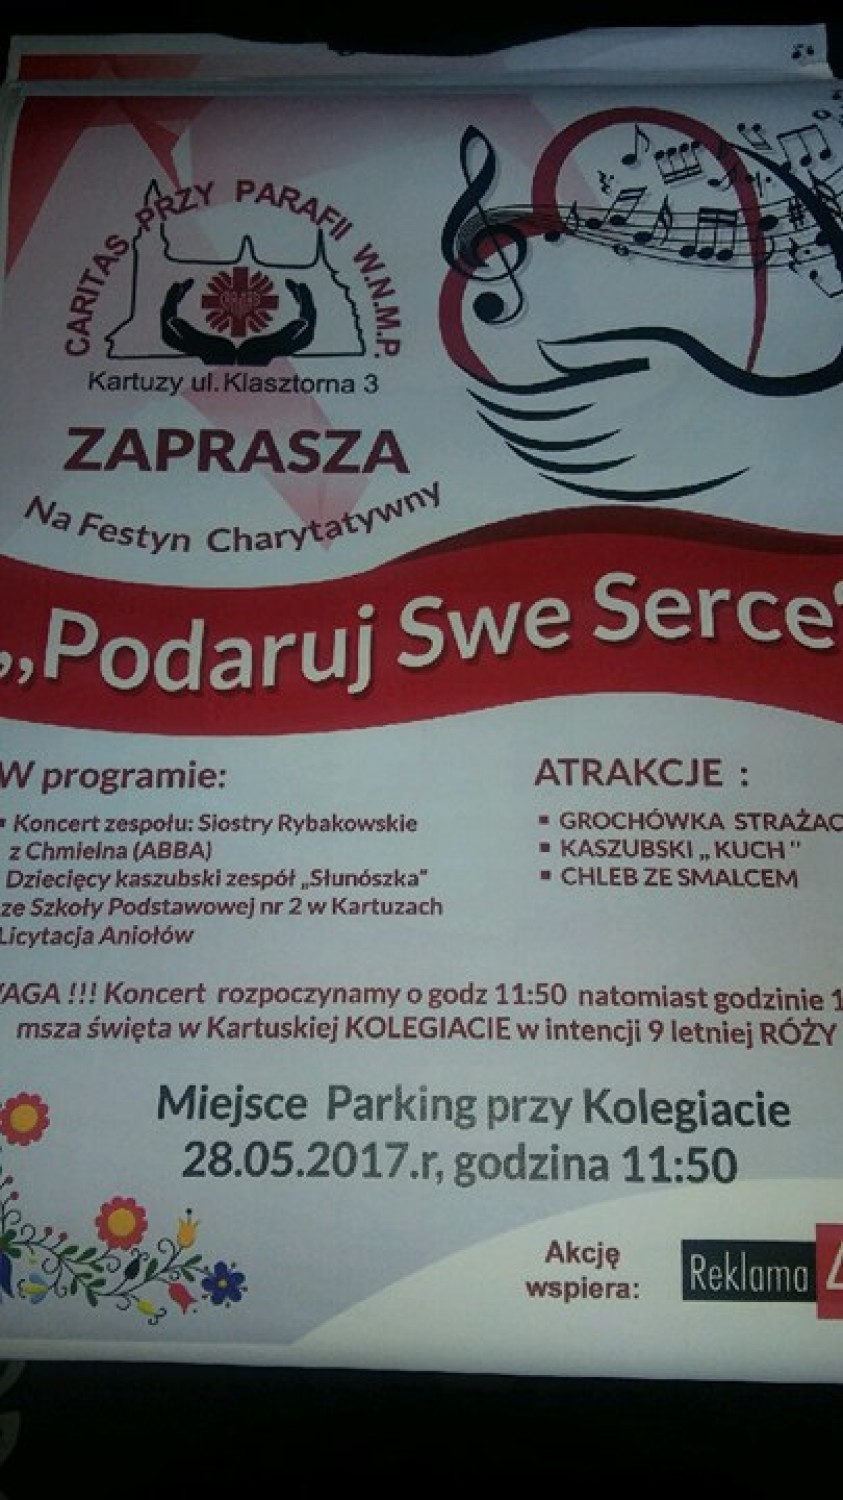 Podaruj Swe Serce - festyn charytatywny na parkingu przy kolegiacie już 28 maja